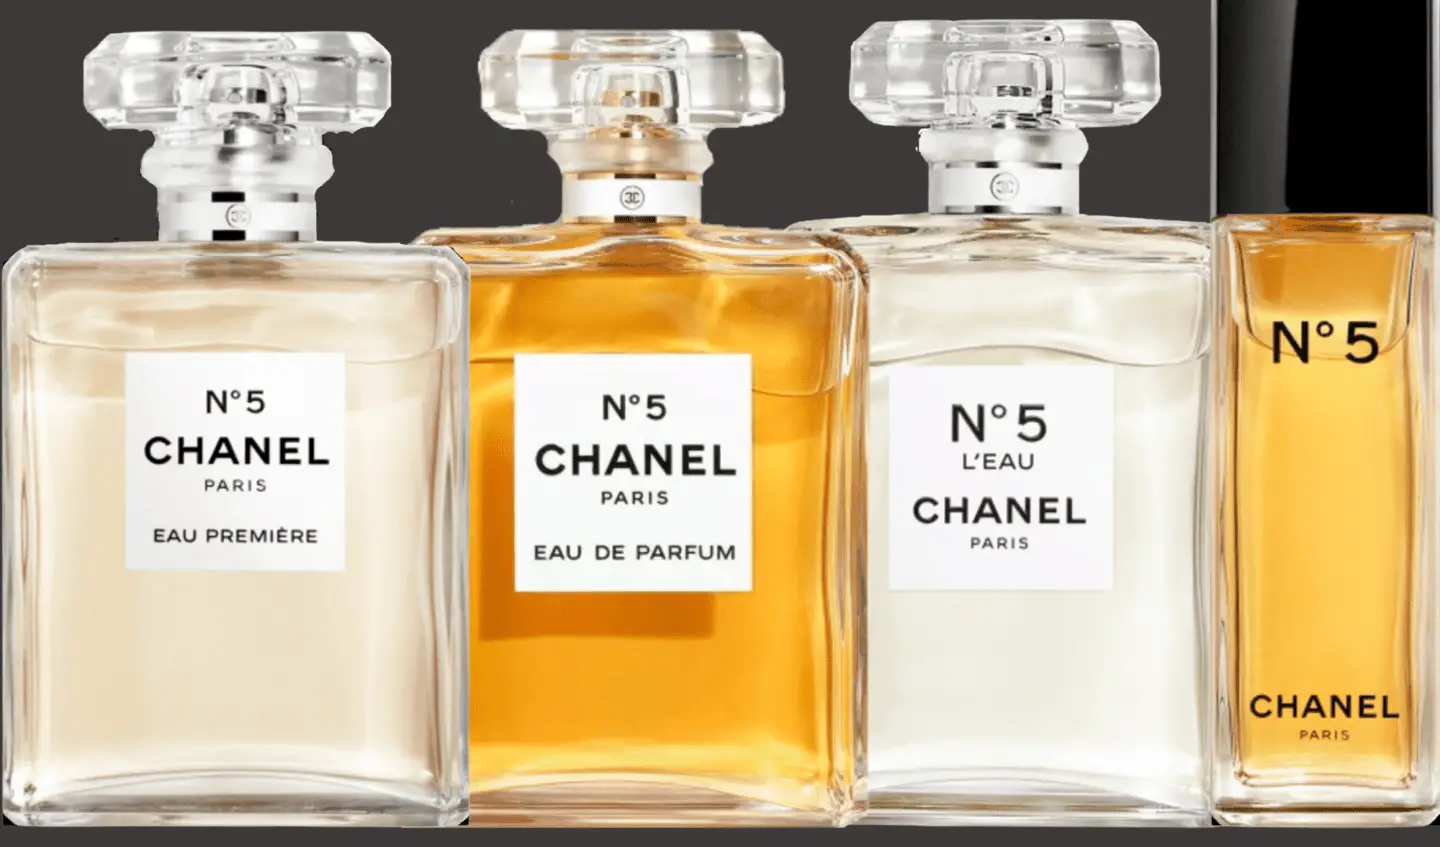 คู่มือขั้นสูงสุดสำหรับกลุ่มน้ำหอม Chanel No 5 น้ำหอมที่ขายดีที่สุดสิบอันดับแรกในโลก